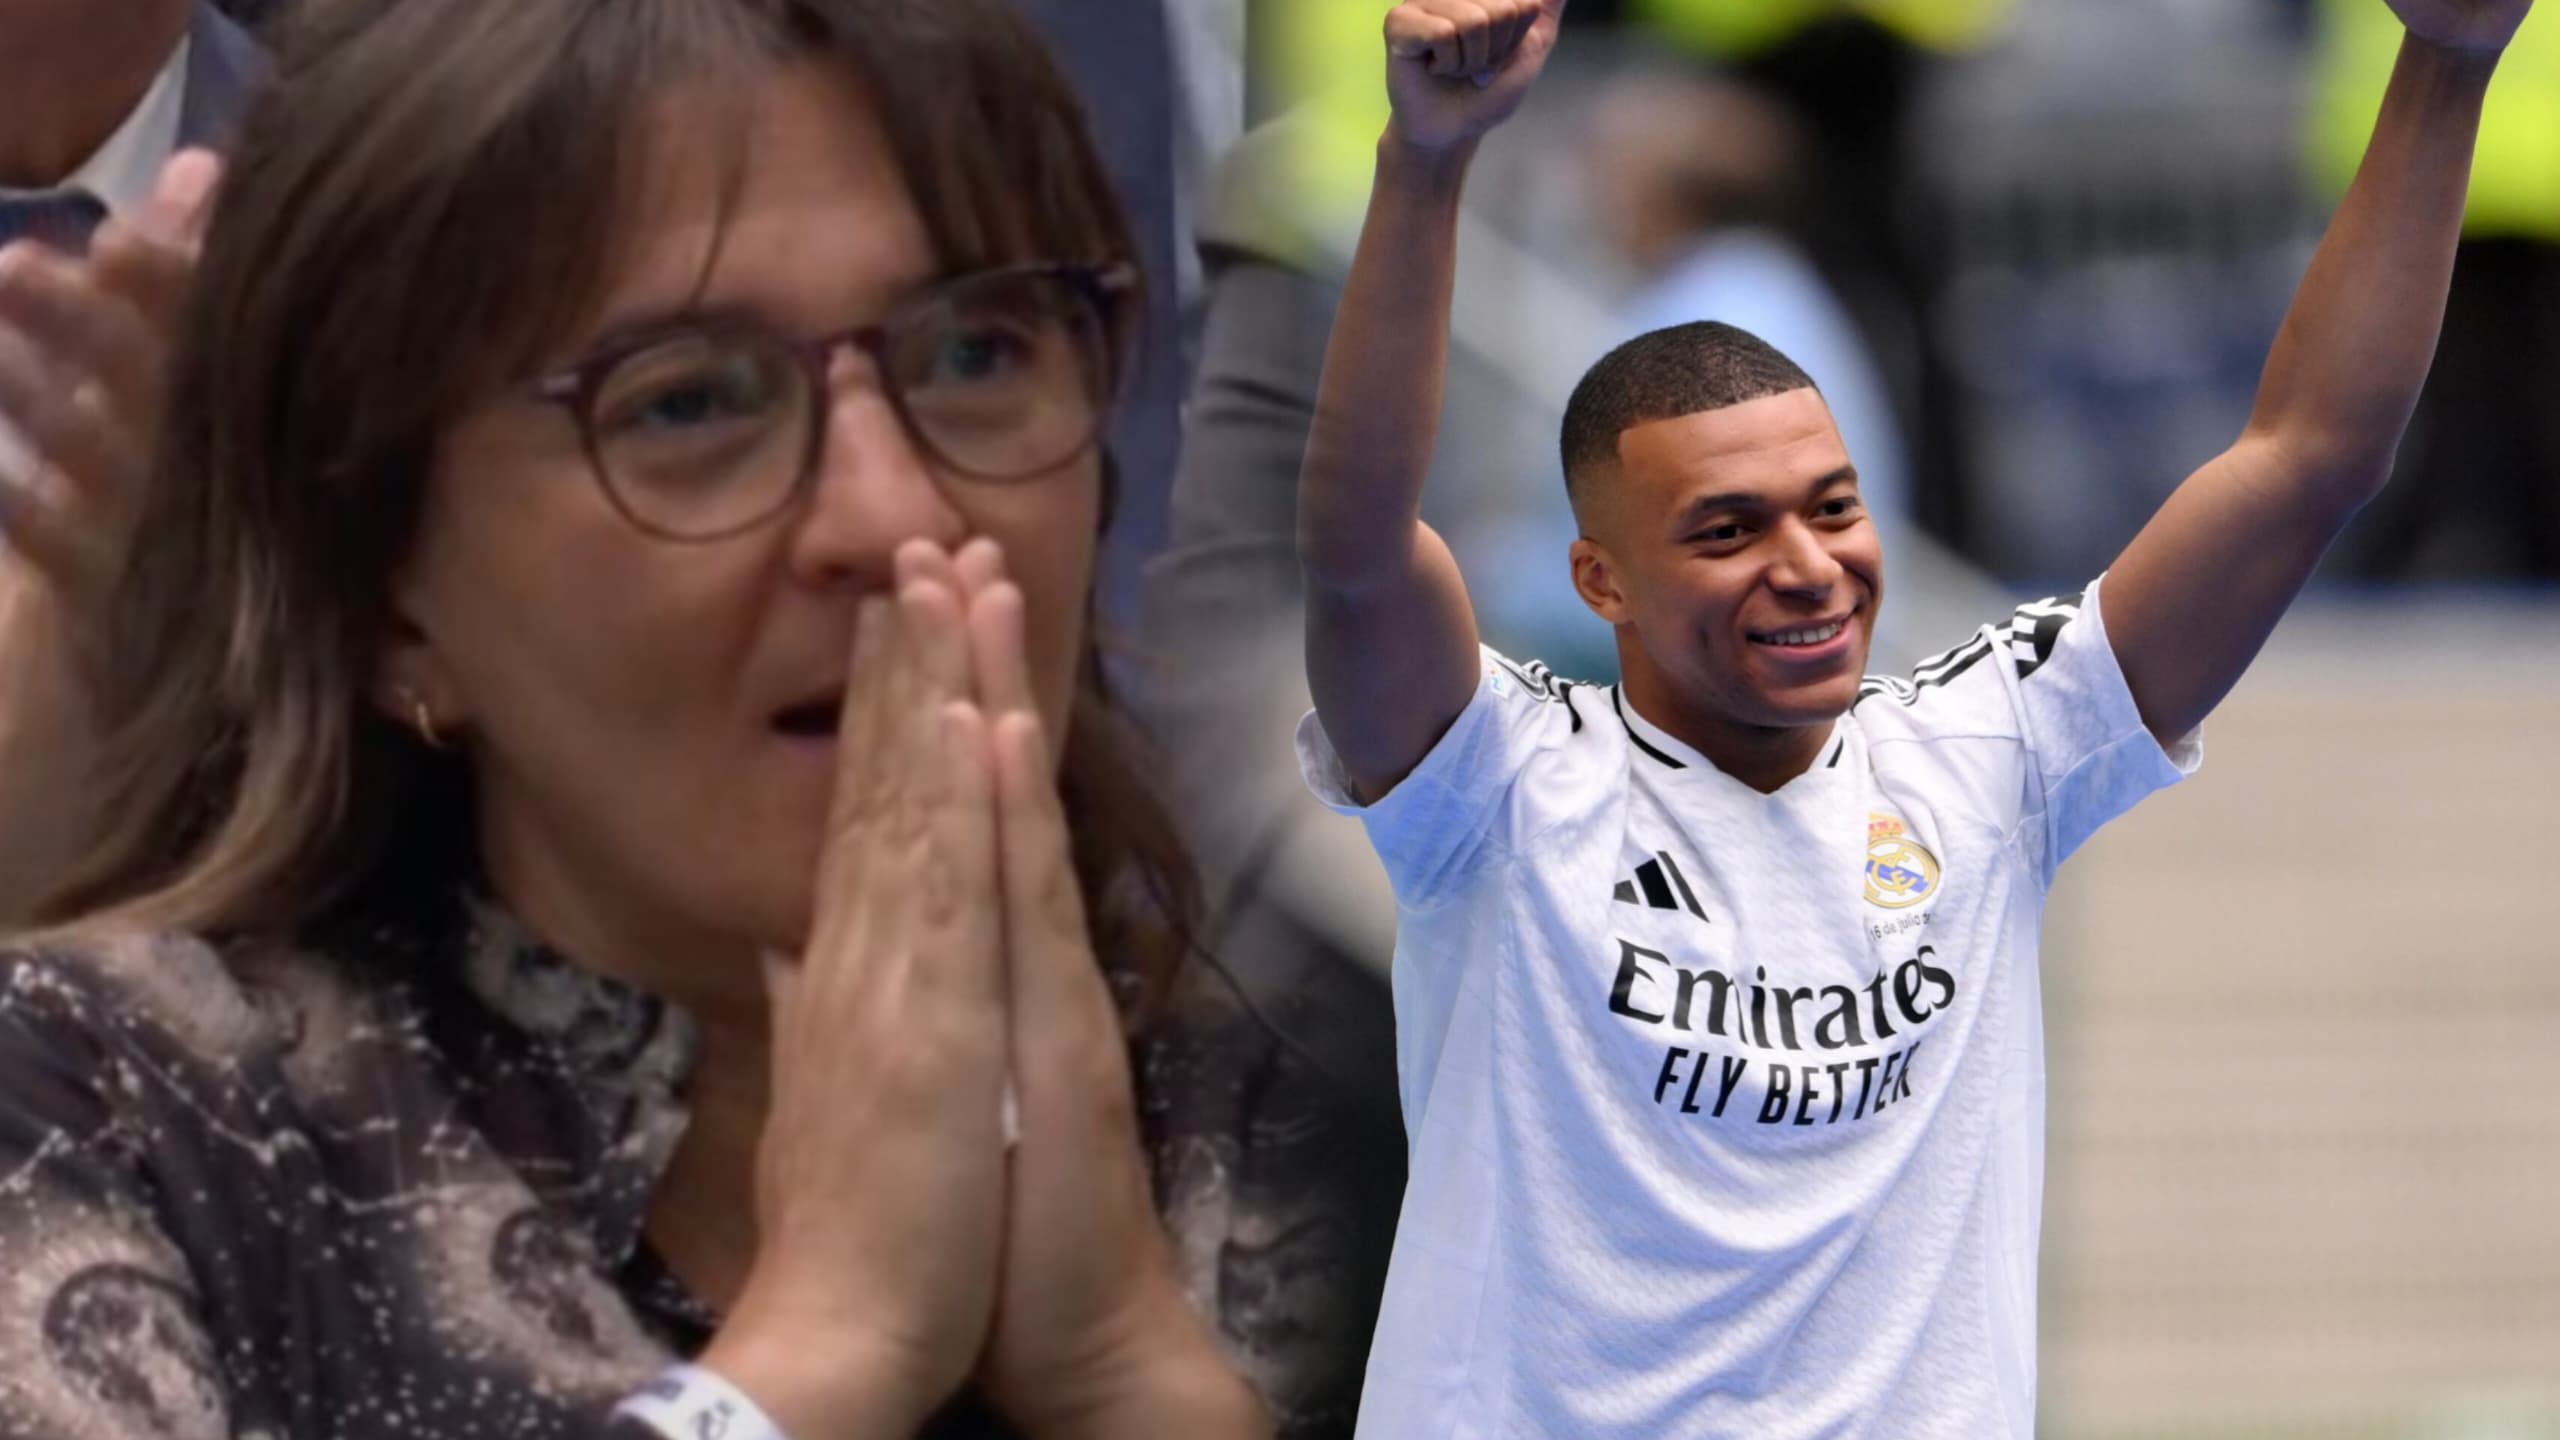  Ce qu’a fait Mbappé en voyant sa mère en larmes enflamme les fans du Real Madrid